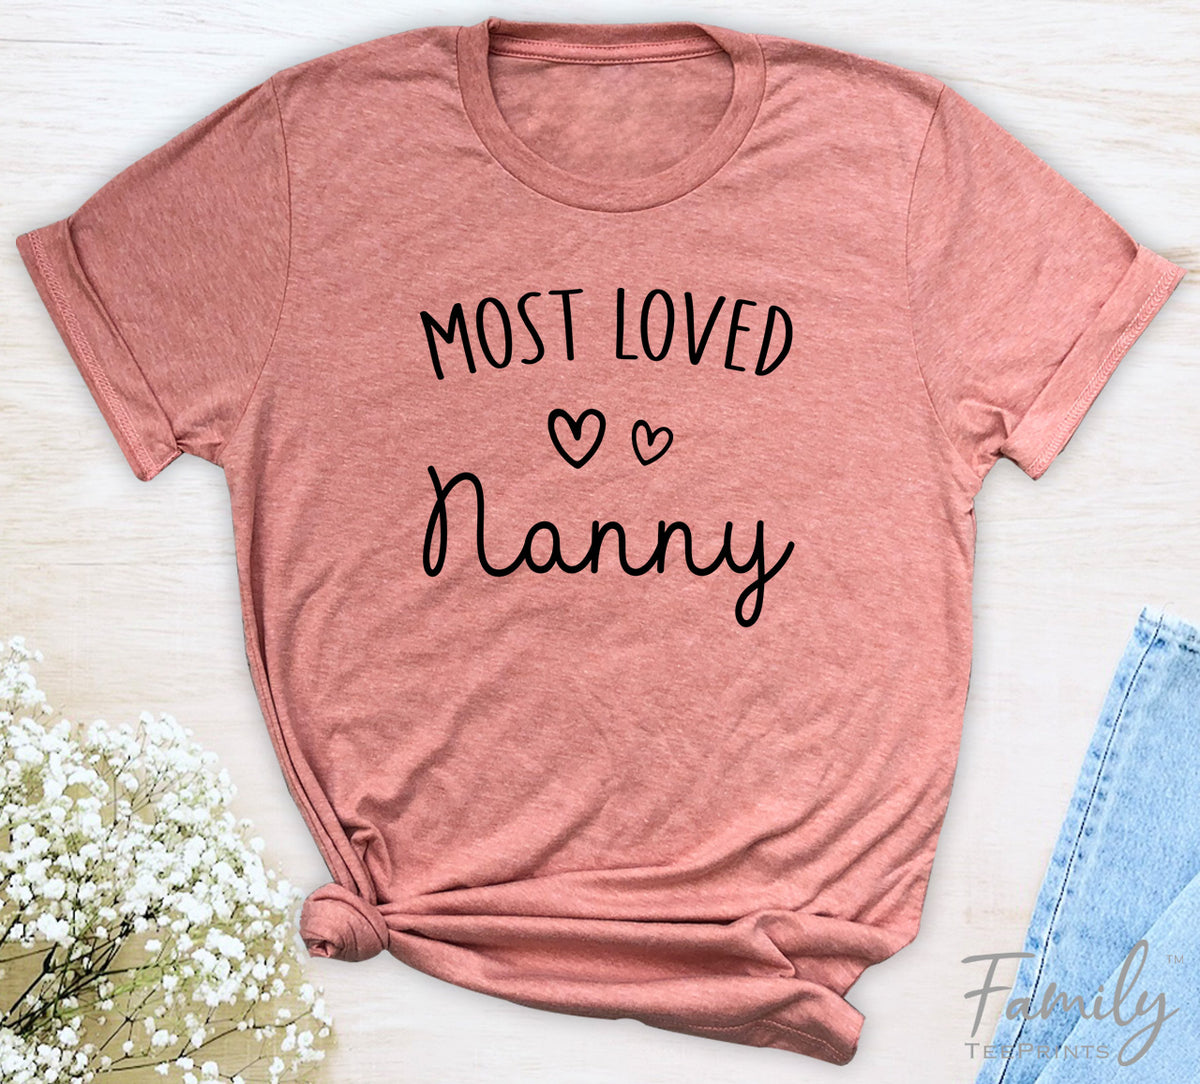 Most Loved Nanny - Unisex T-shirt - Nanny Shirt - Gift For Nanny - familyteeprints